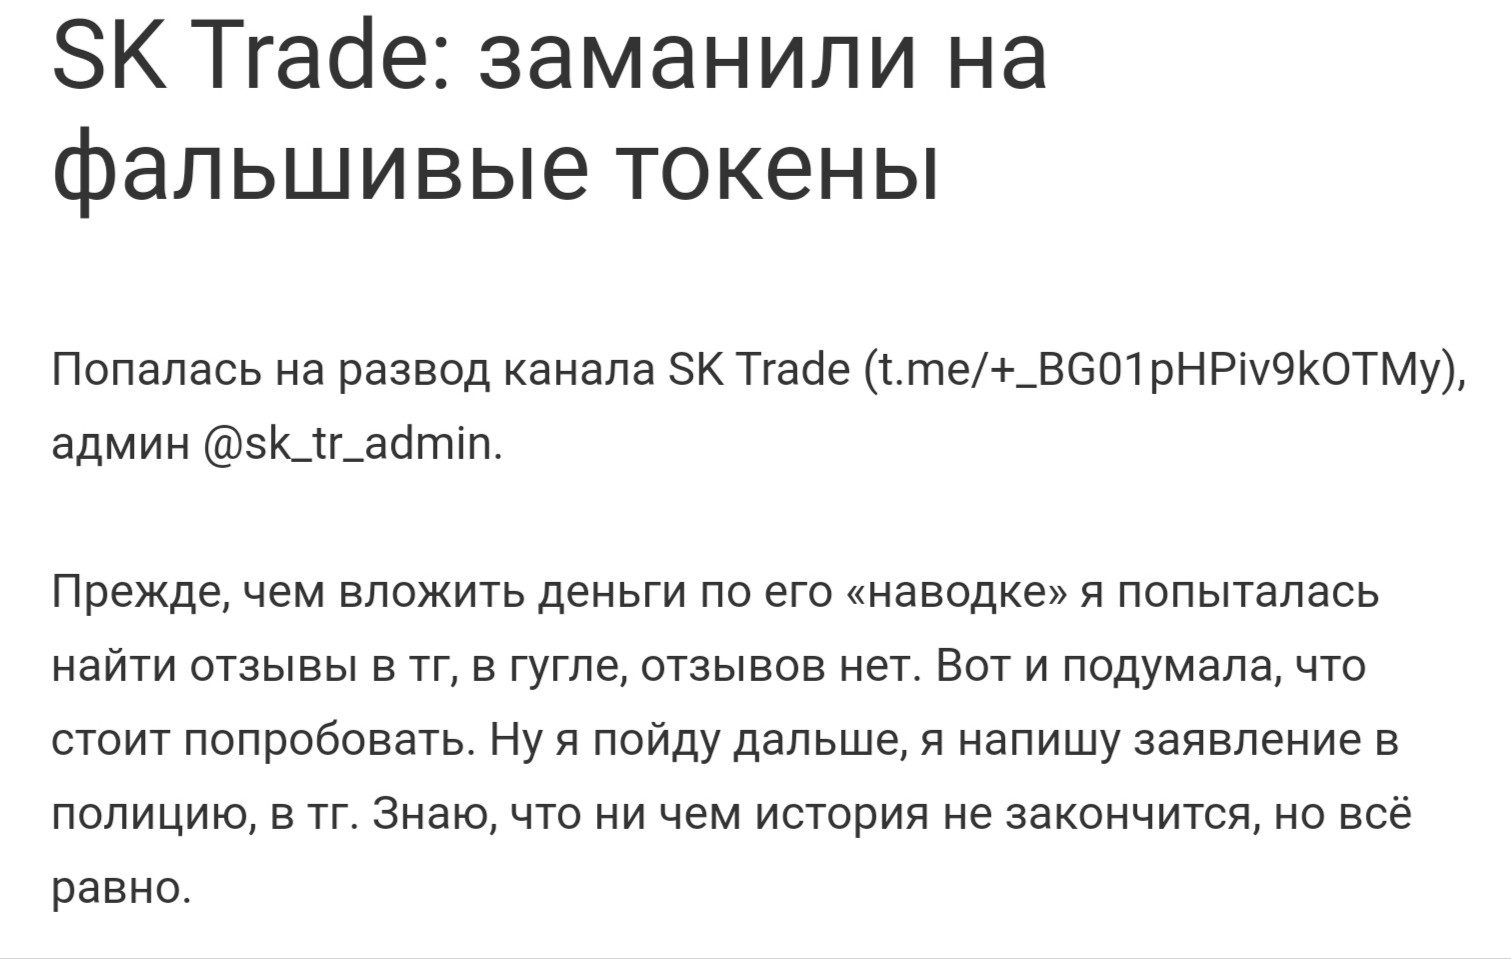 Отзывы о канале SK Trade в Телеграмм